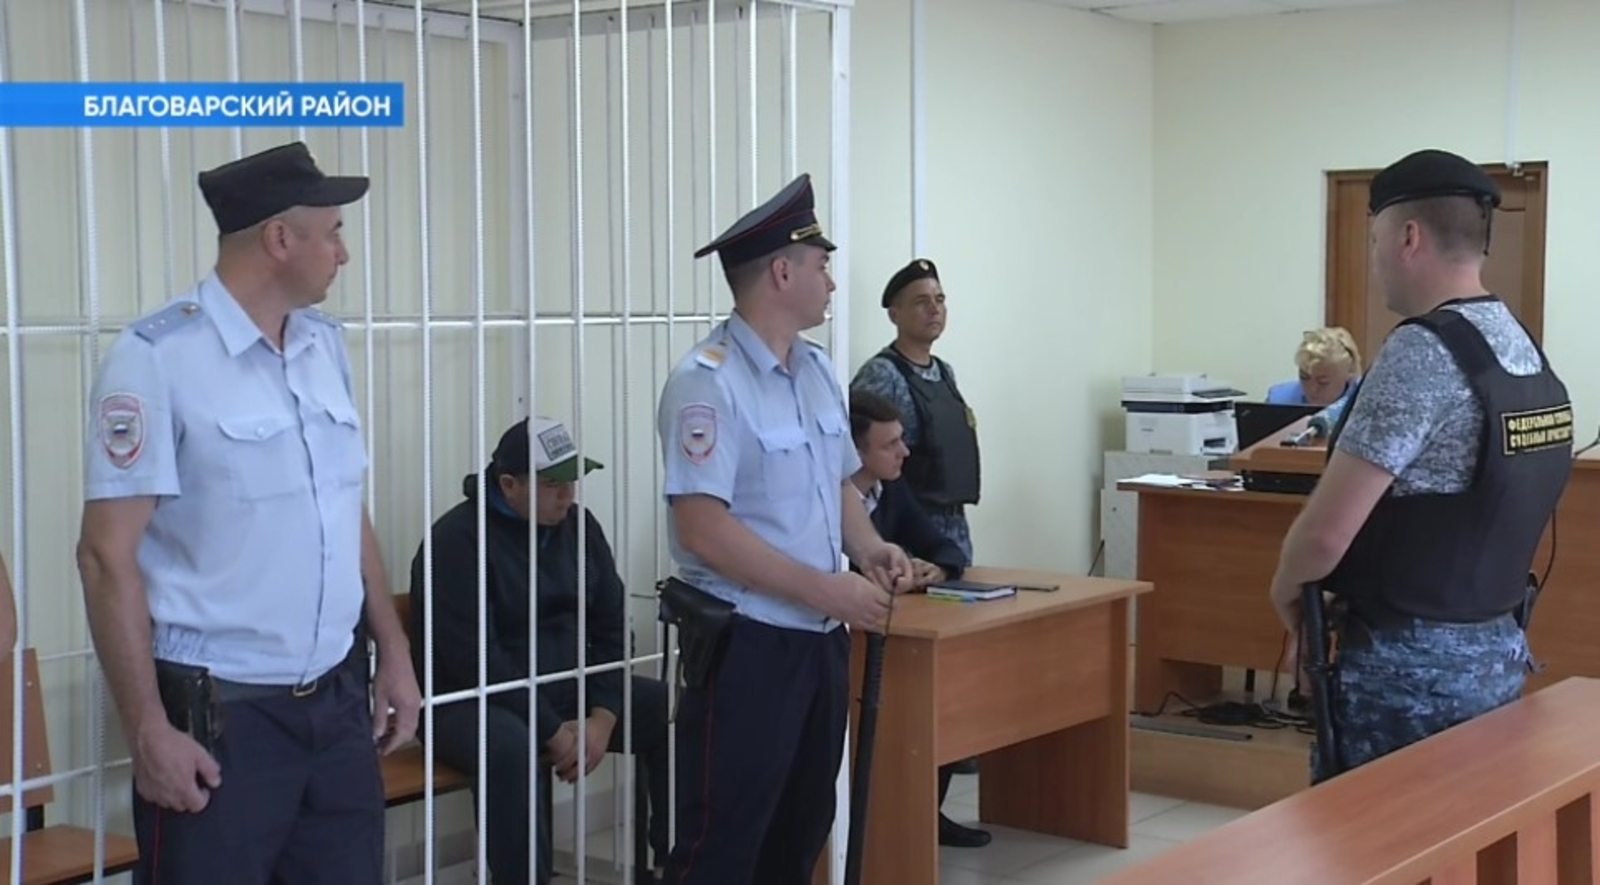 Подробности из суда в Башкирии, где вынесли приговор виновнику ДТП с 6 погибшими